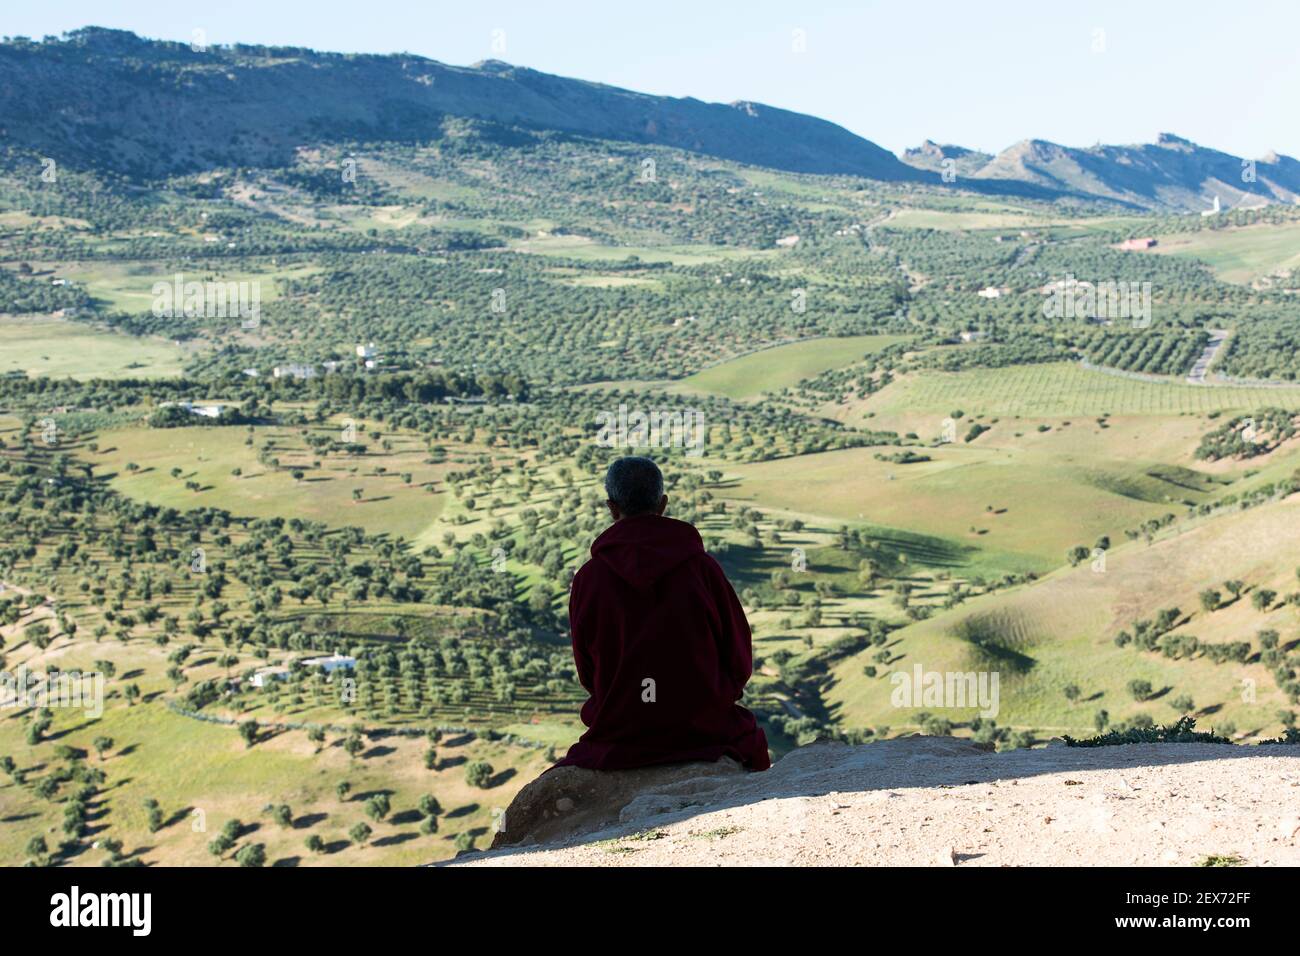 Marocco, Fez, silhouette di una persona che guarda fuori il paesaggio delle verdi colline che circondano la città Foto Stock